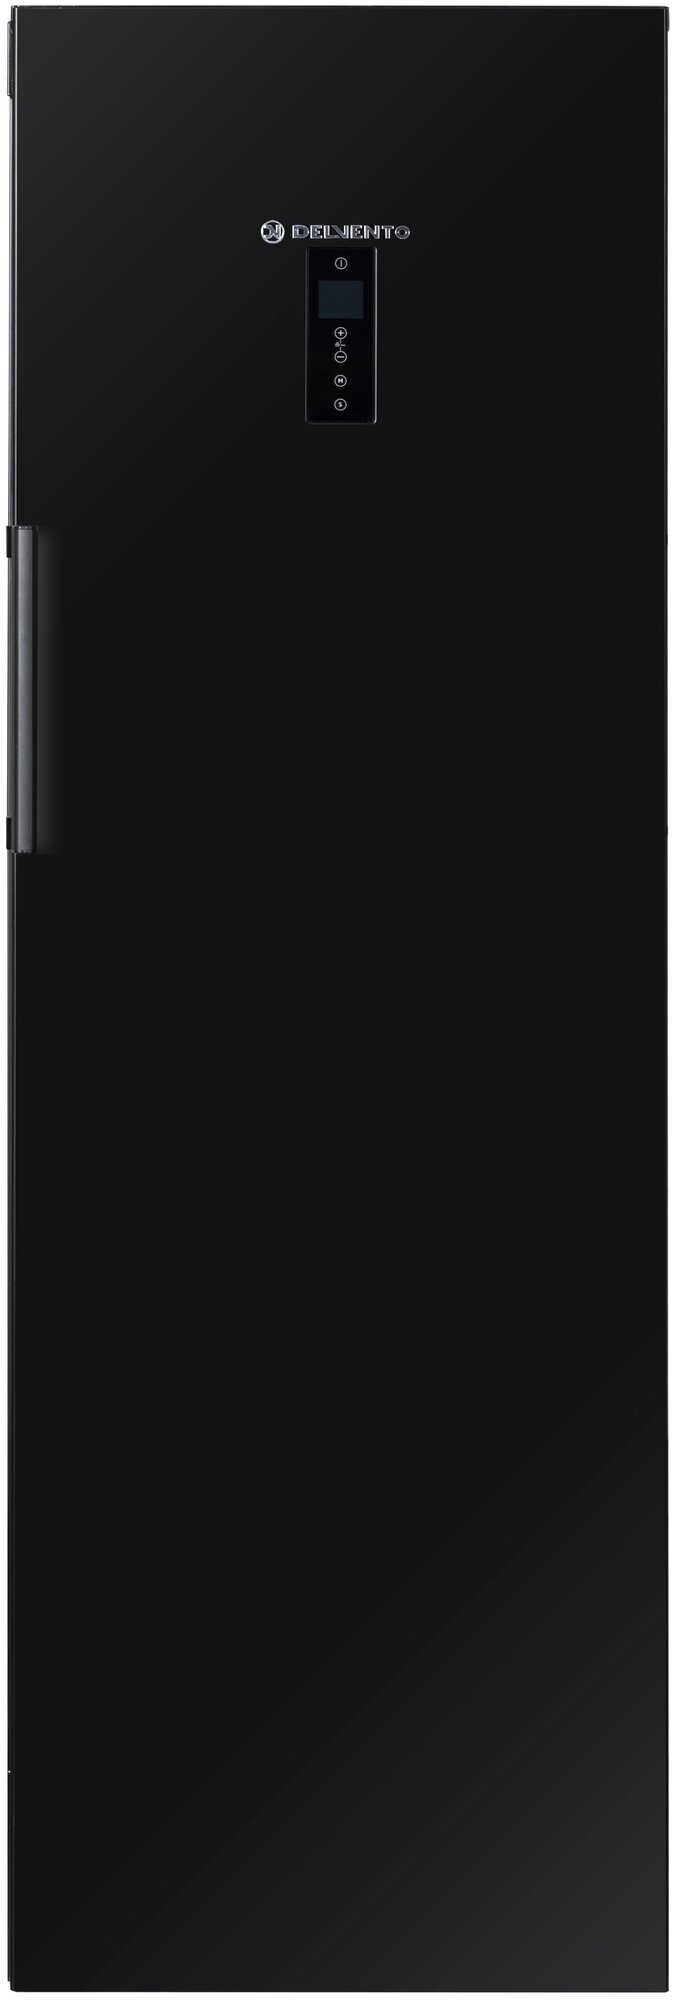 Вертикальный морозильный шкаф DELVENTO VB8301A+ Double Reliable 185 см, No Frost, двойной режим, LED дисплей, электронное управление, черный - фотография № 1